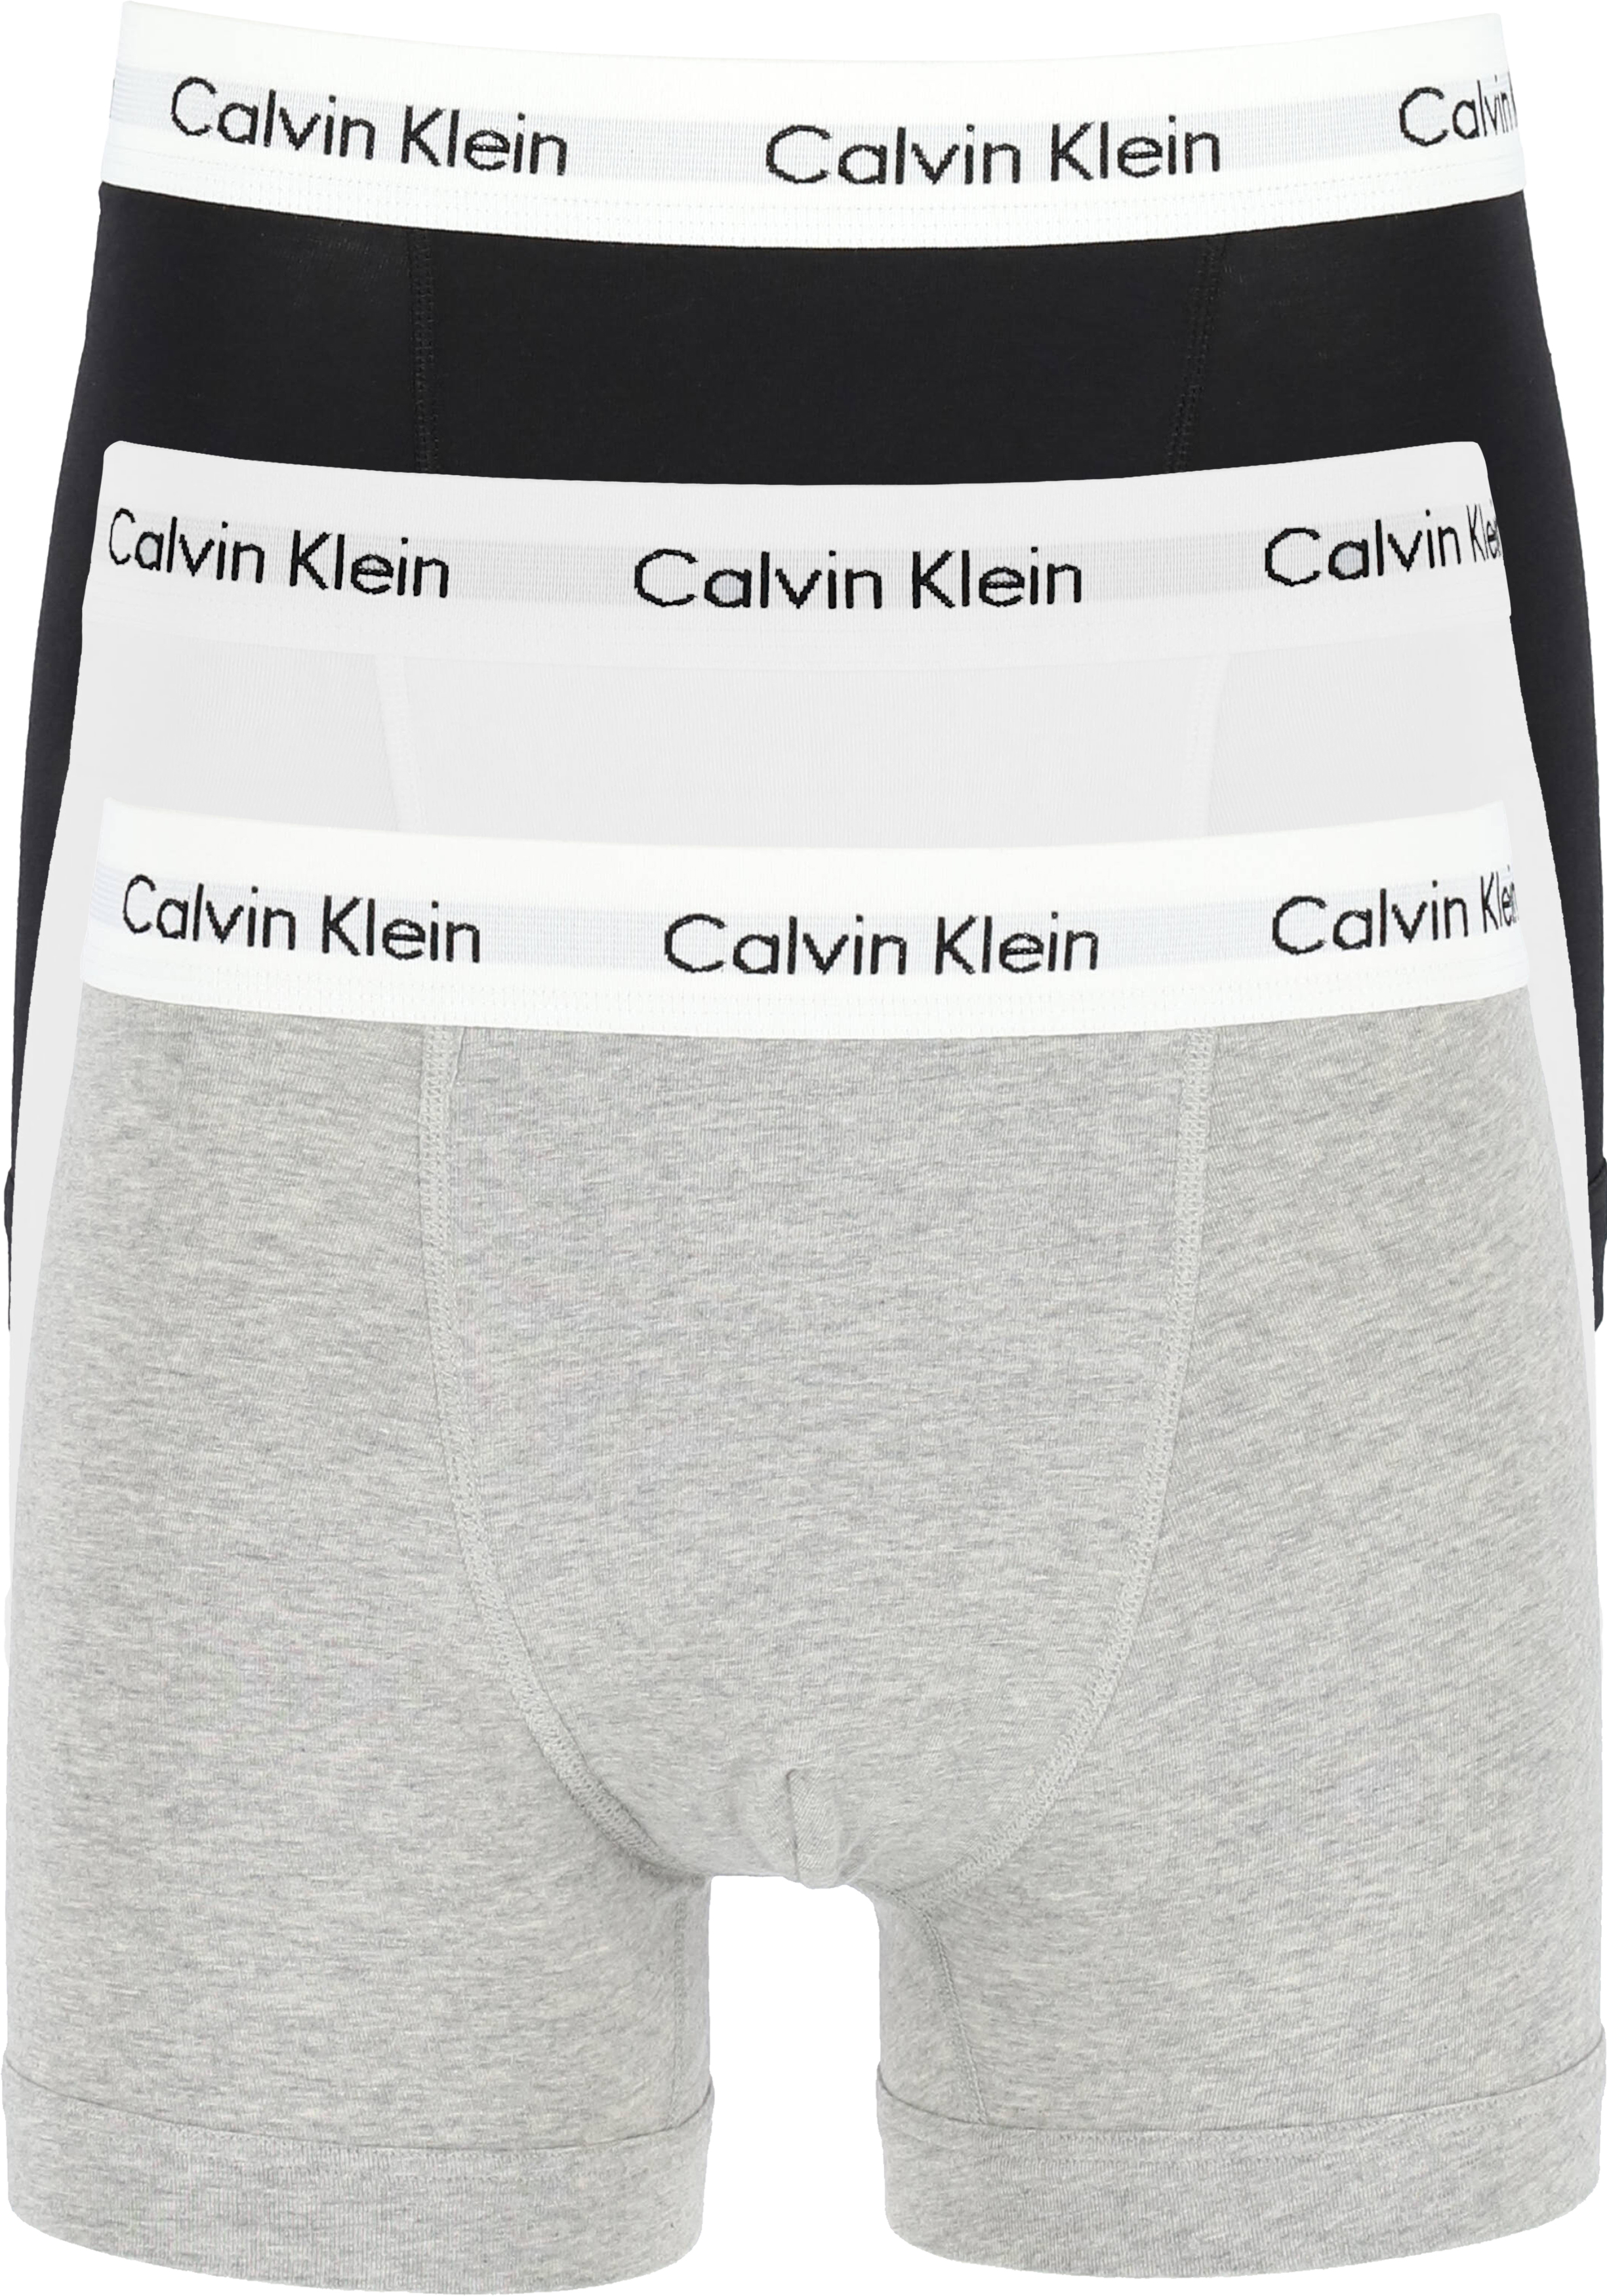 bodem legaal Meting Calvin Klein Trunks (3-pack), zwart - grijs en wit - Gratis bezorgd